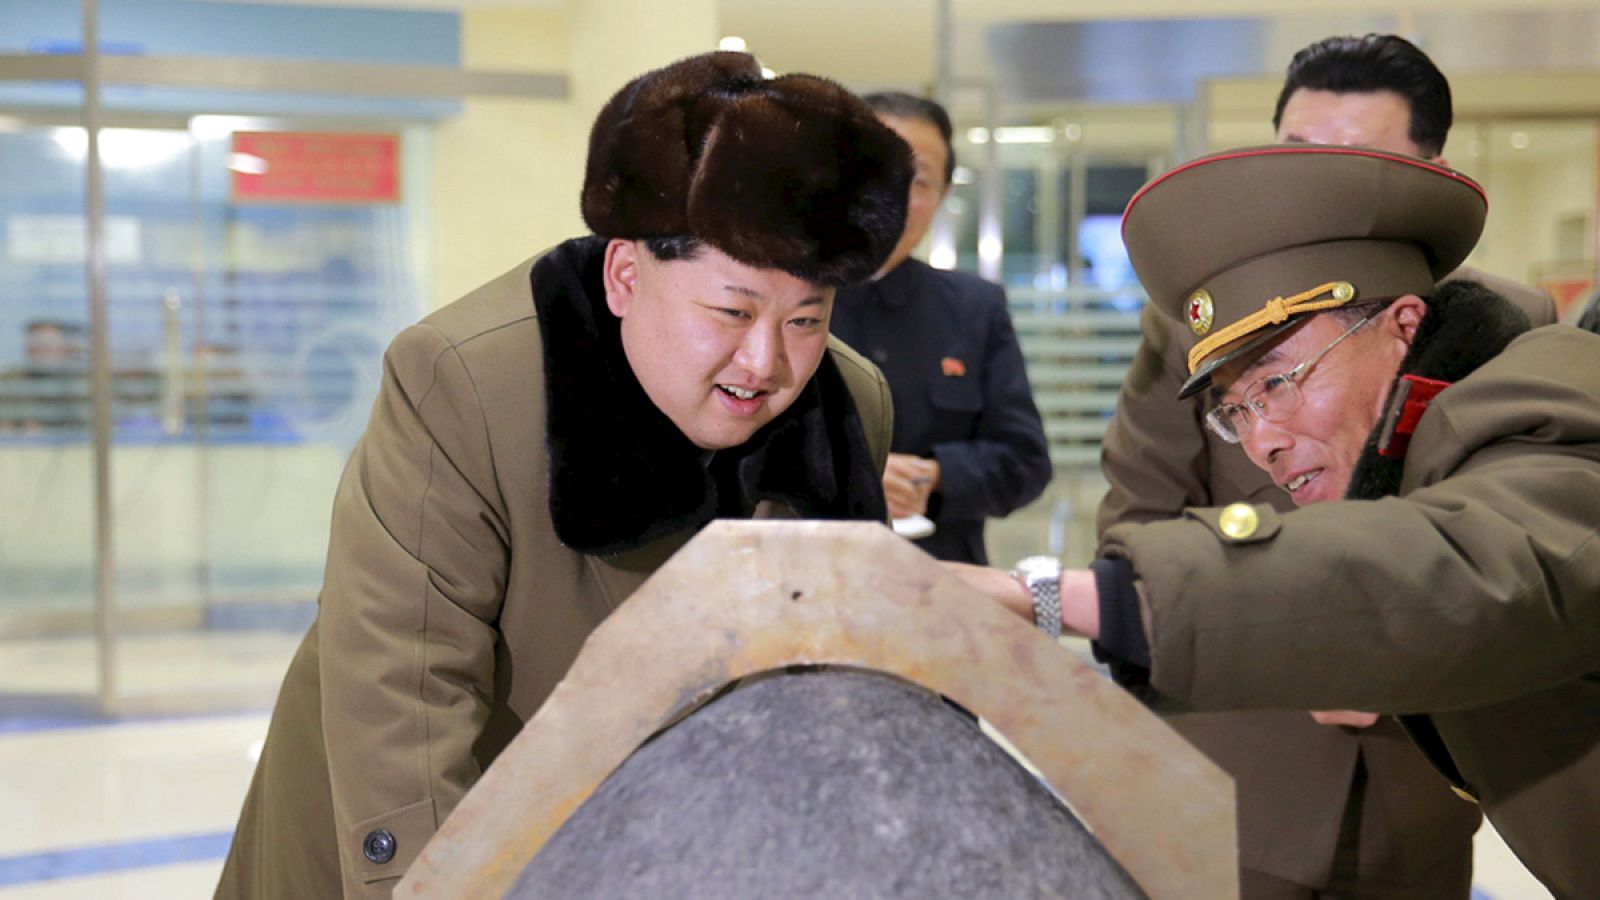 El líder norcoreano, Kim Jong-un observa la cabeza de un misil balísitico en una imagen de archivo.